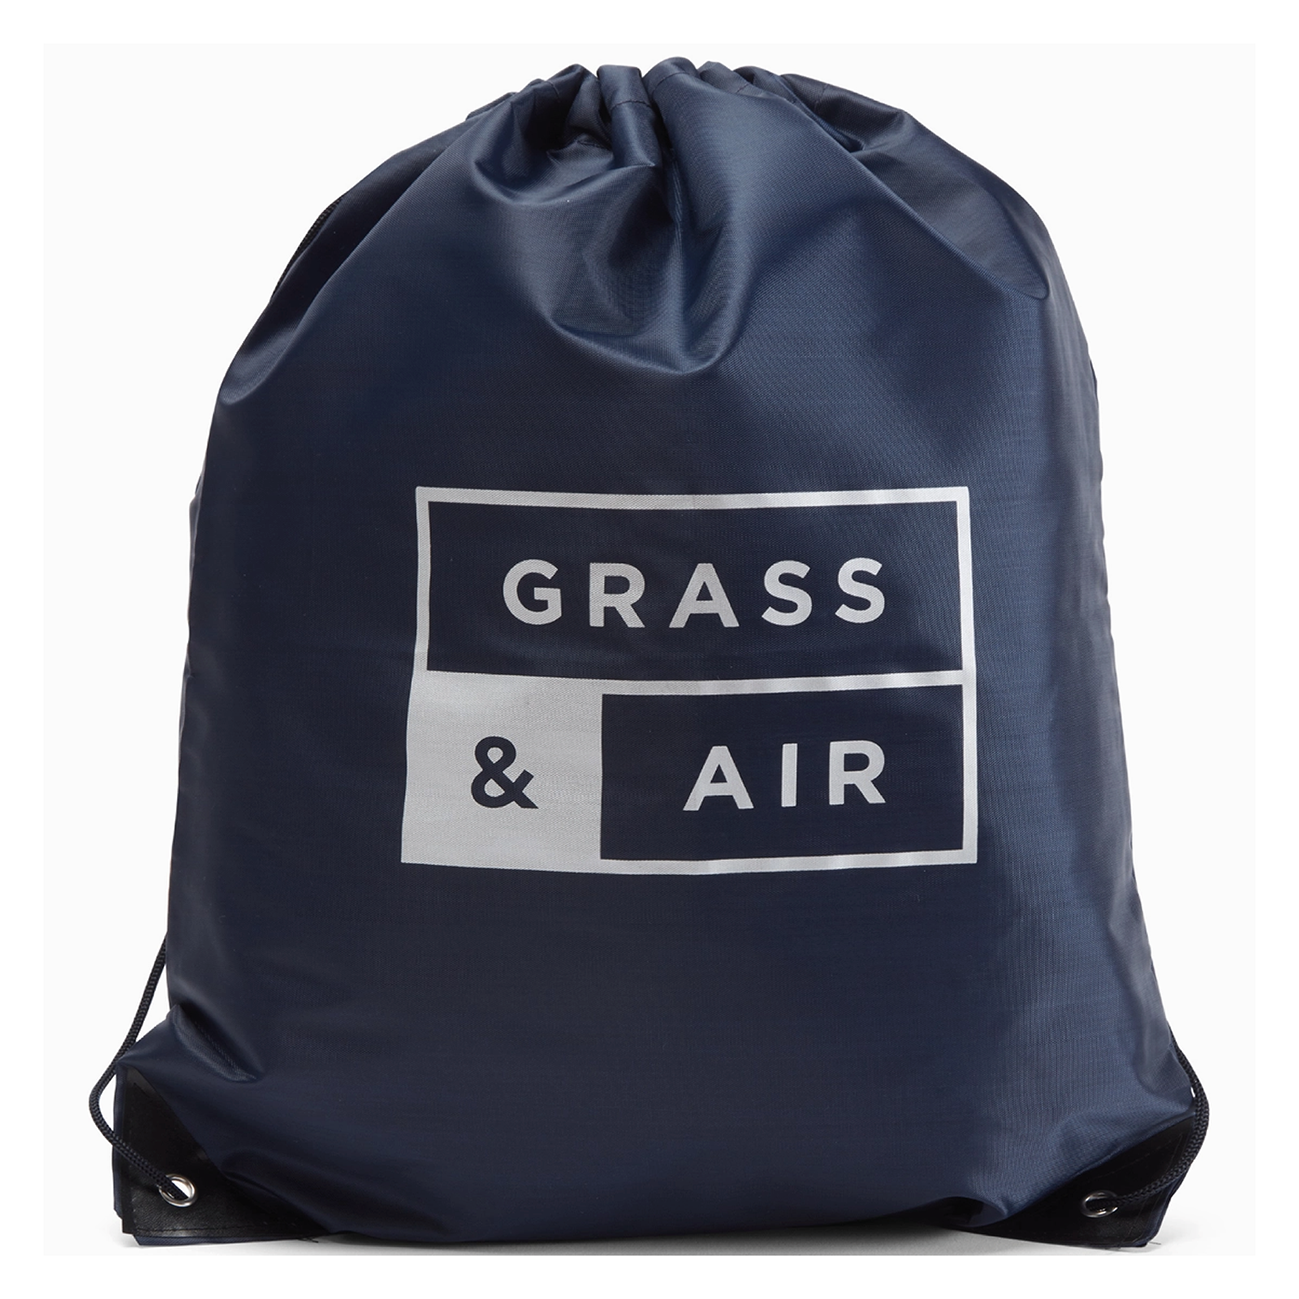 Grass & Air Kids Wellies - Baby Blue